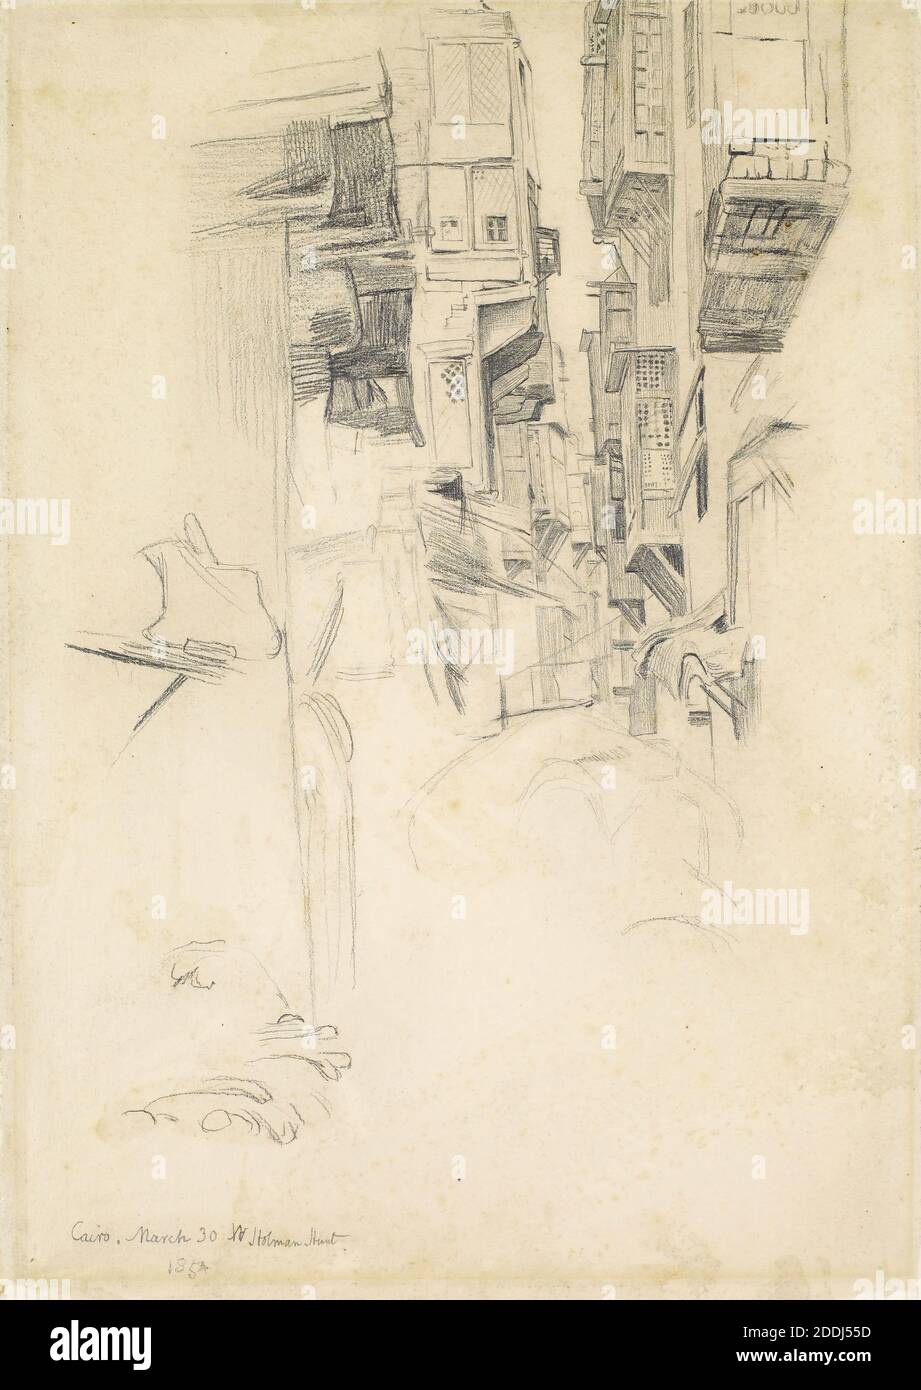 The Lantern Maker's Courtship, Study of A Street Scene in Cairo, 1854 artista: William Holman Hunt, disegno, matita, schizzo, Pre-Raphaelite, scena di strada Foto Stock